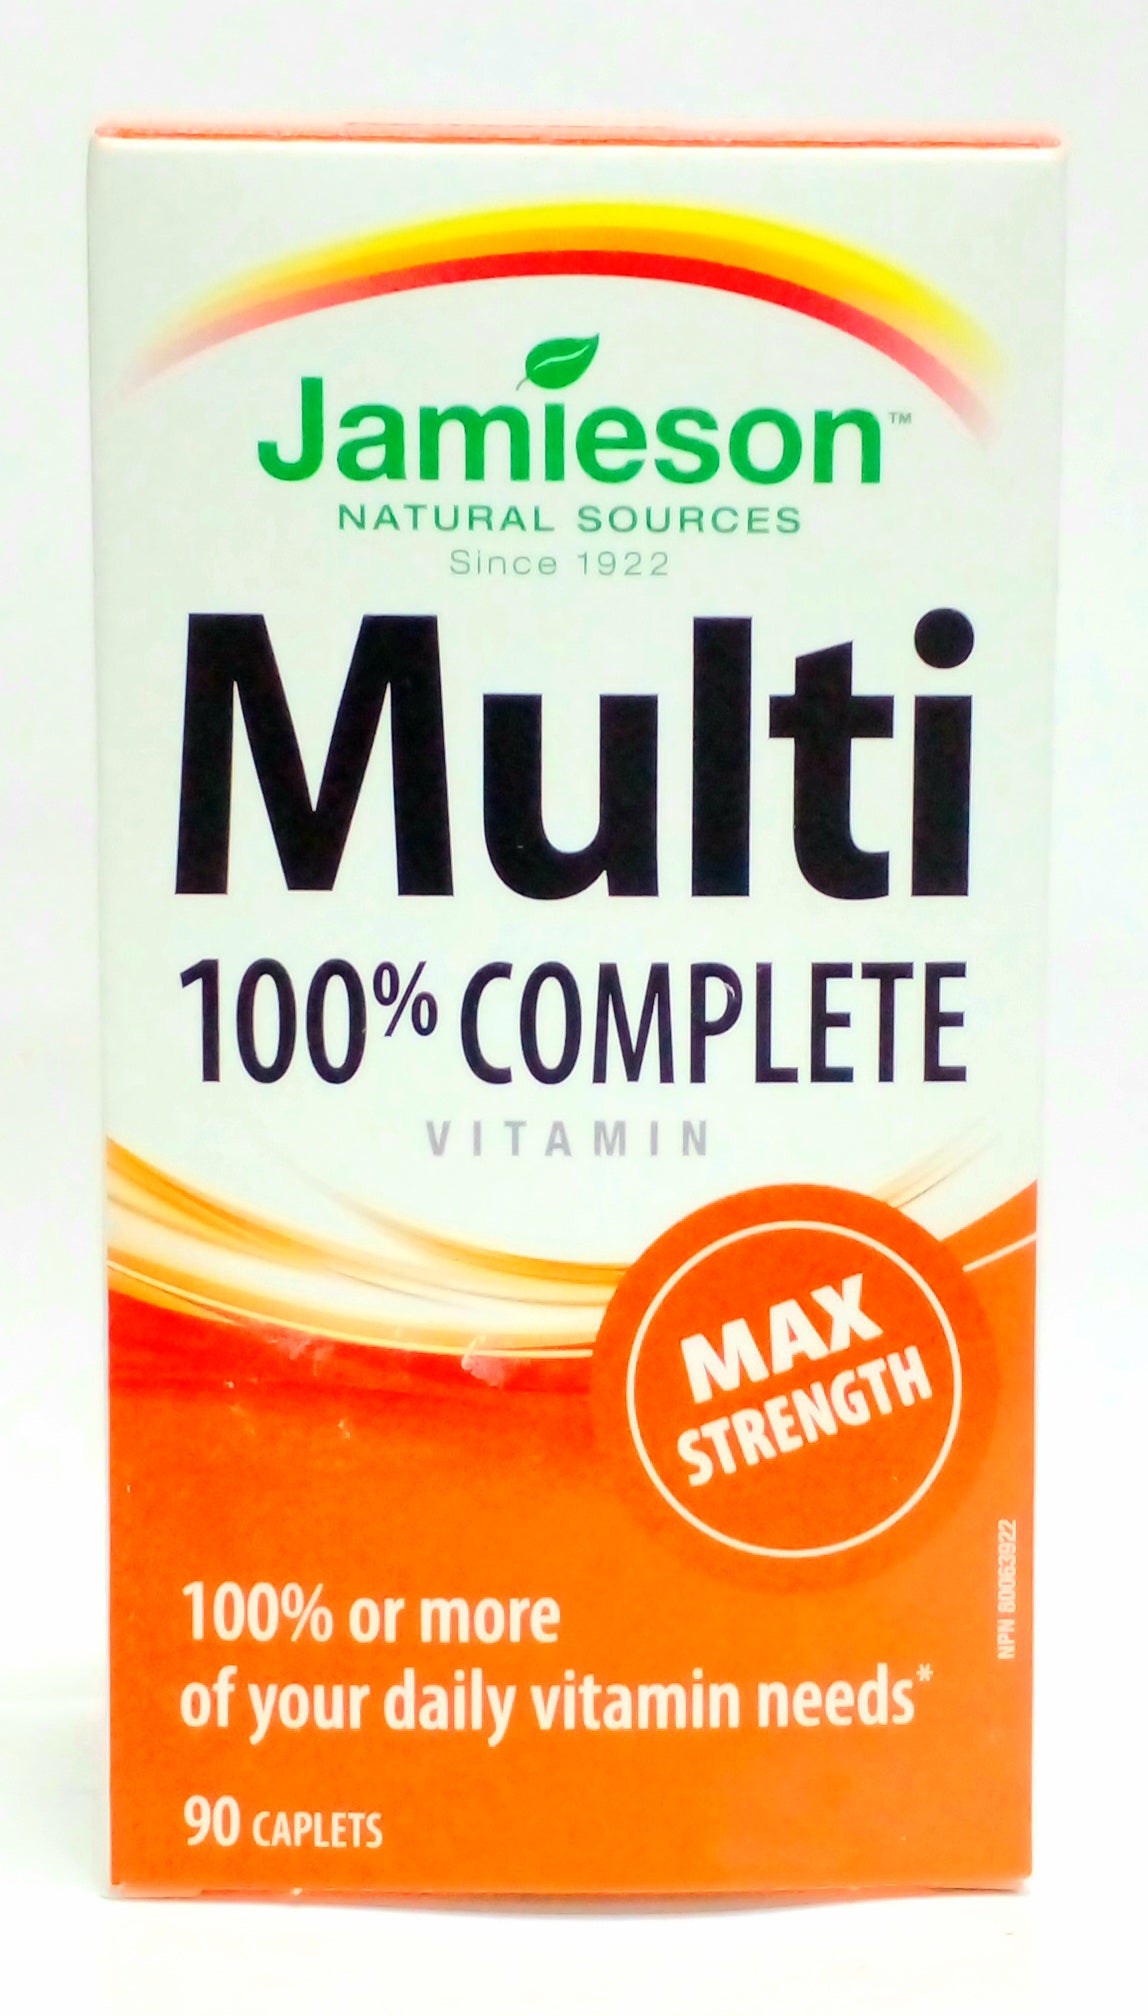 Jamieson Multi 100% complete